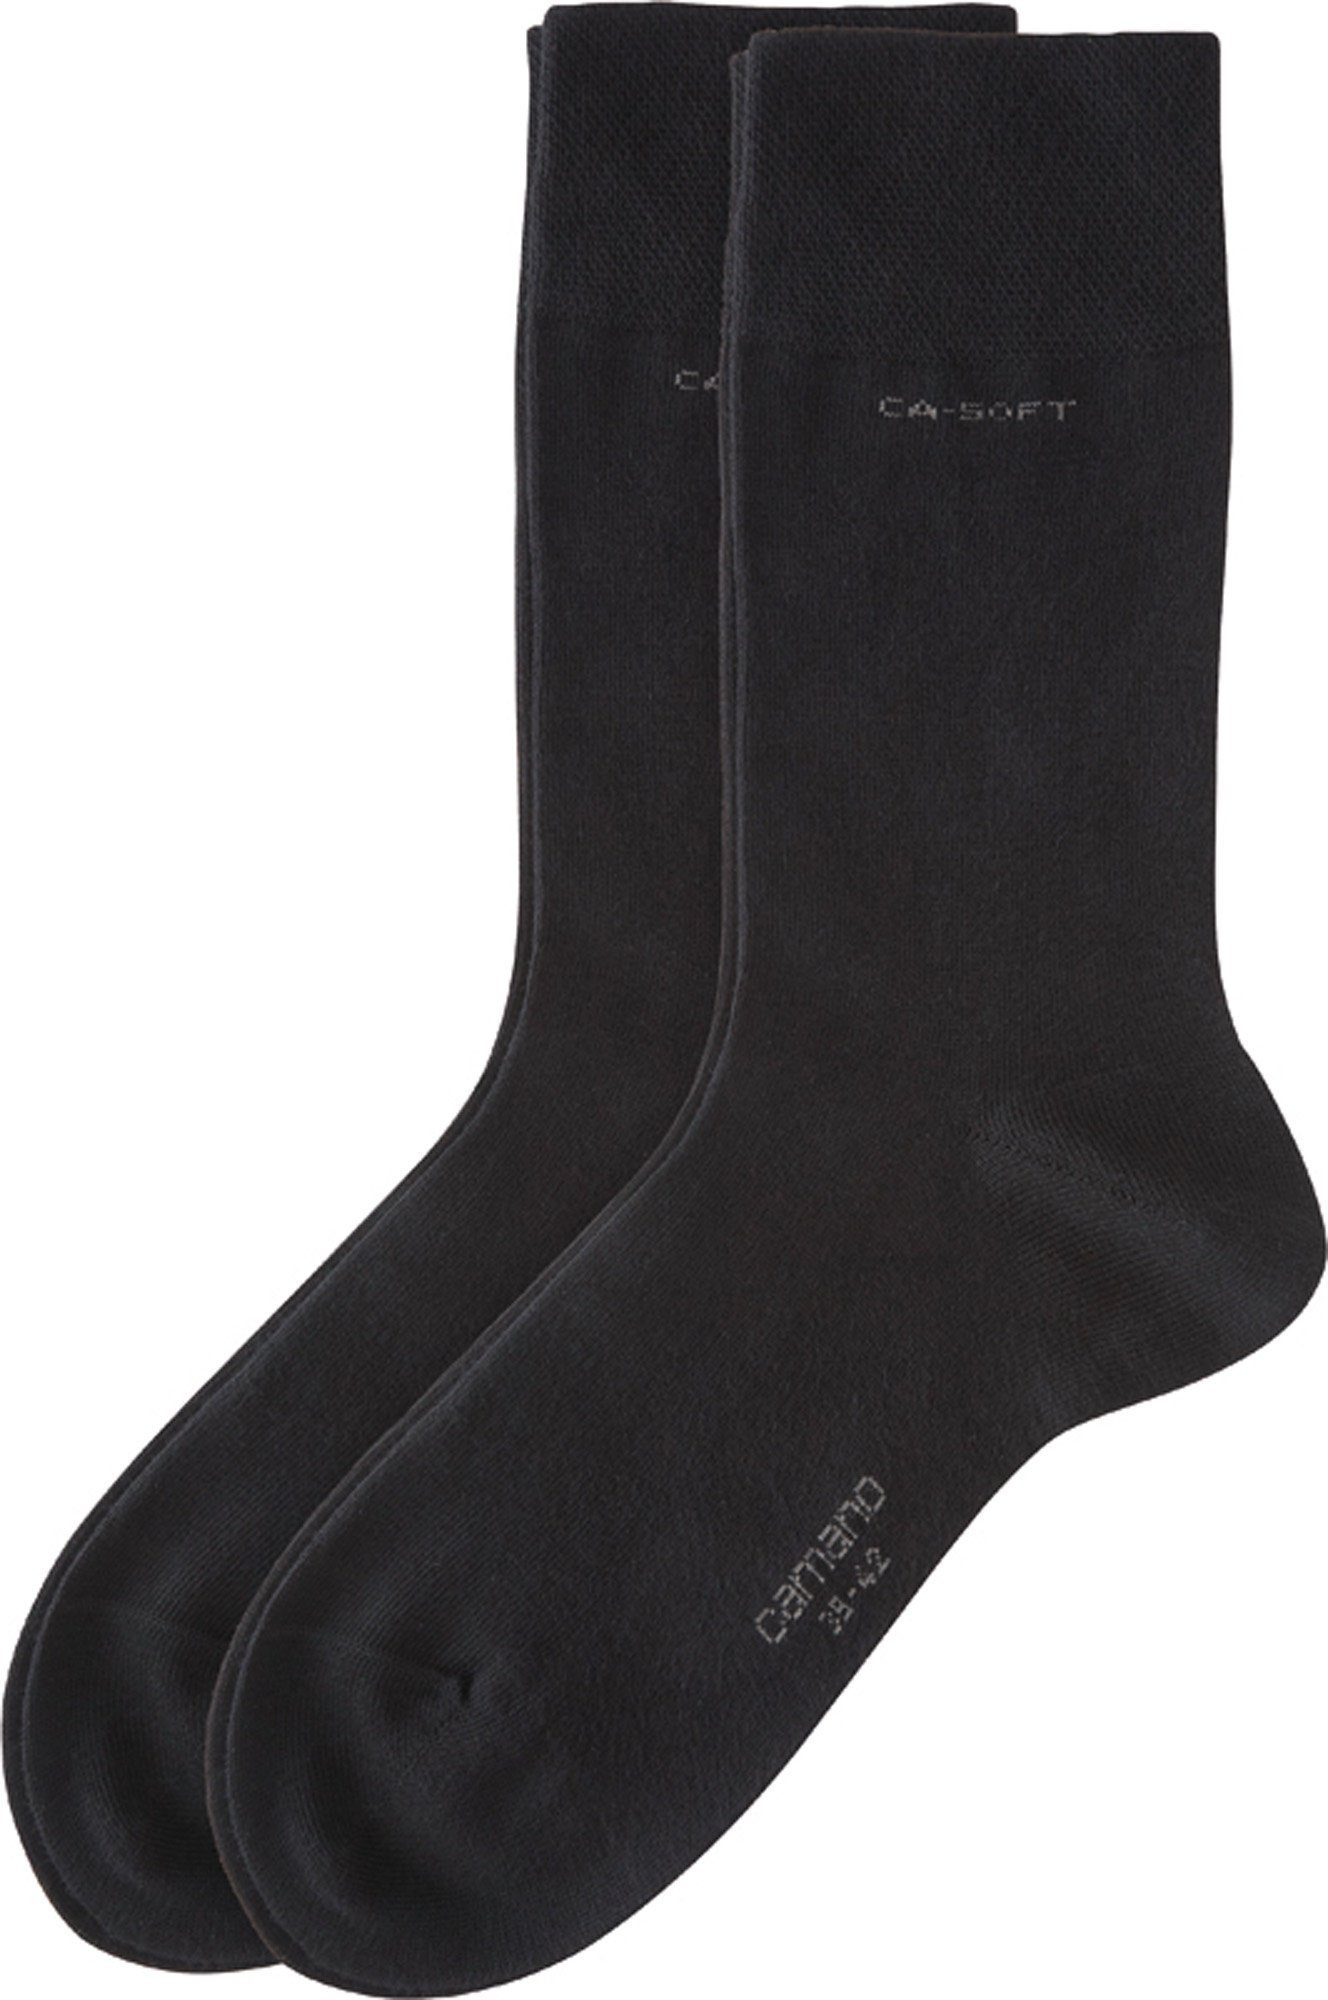 mit Uni Camano Paar Softbund Unisex-Socken Socken 2 schwarz